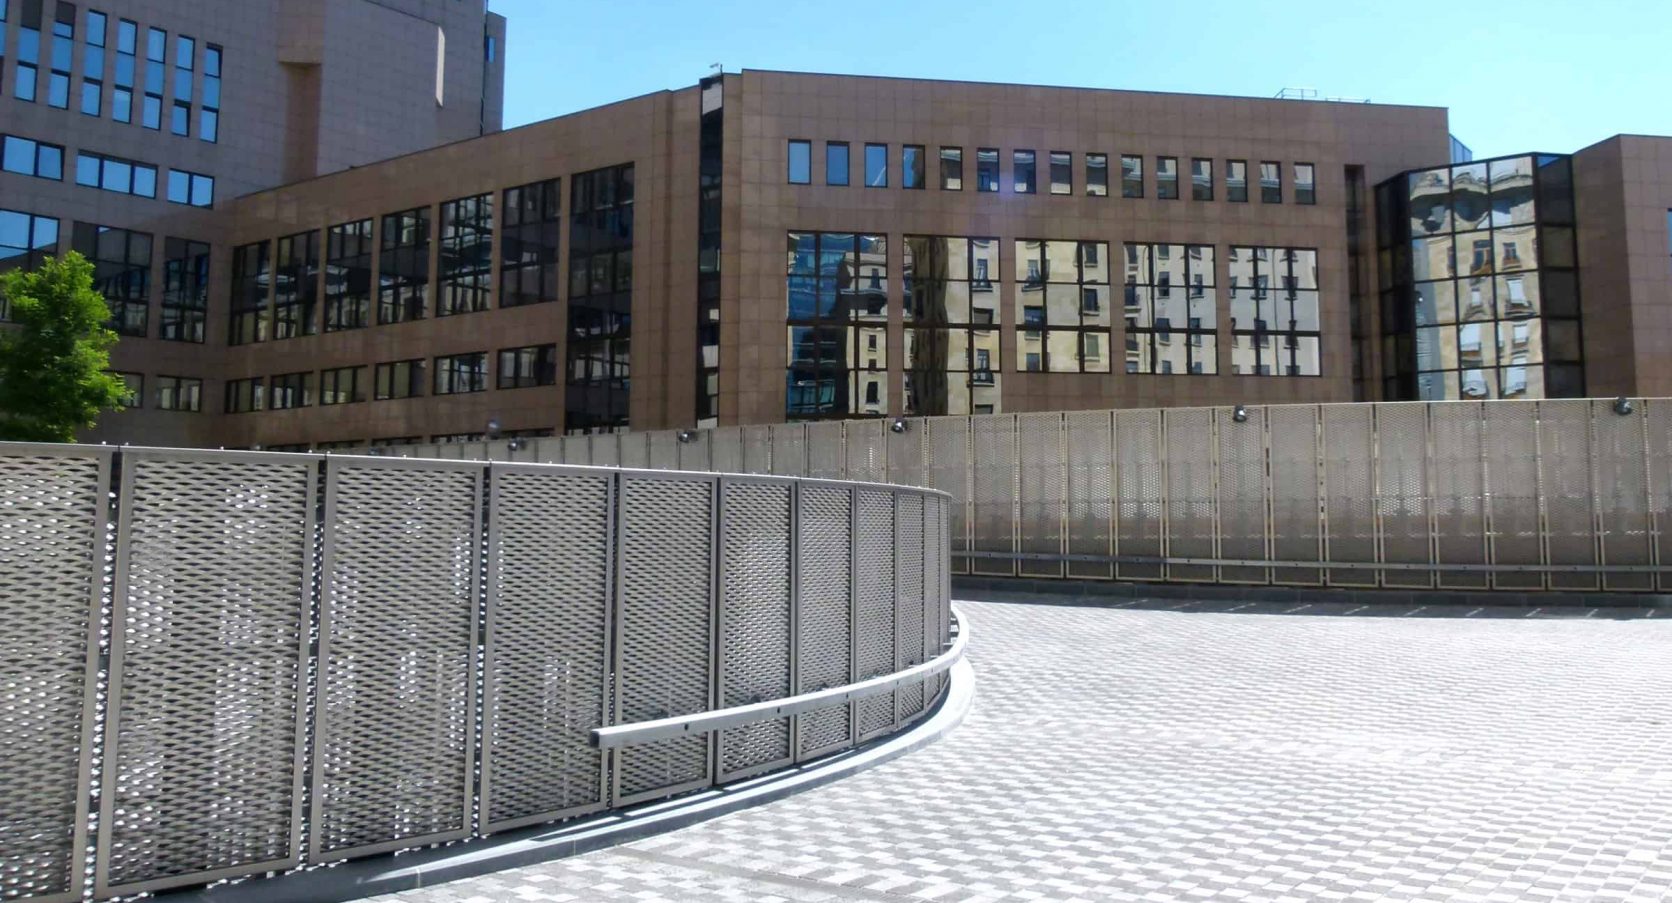 Terreinafscheiding van rvs strekmetaal van het Residence Palace in Brussel te België